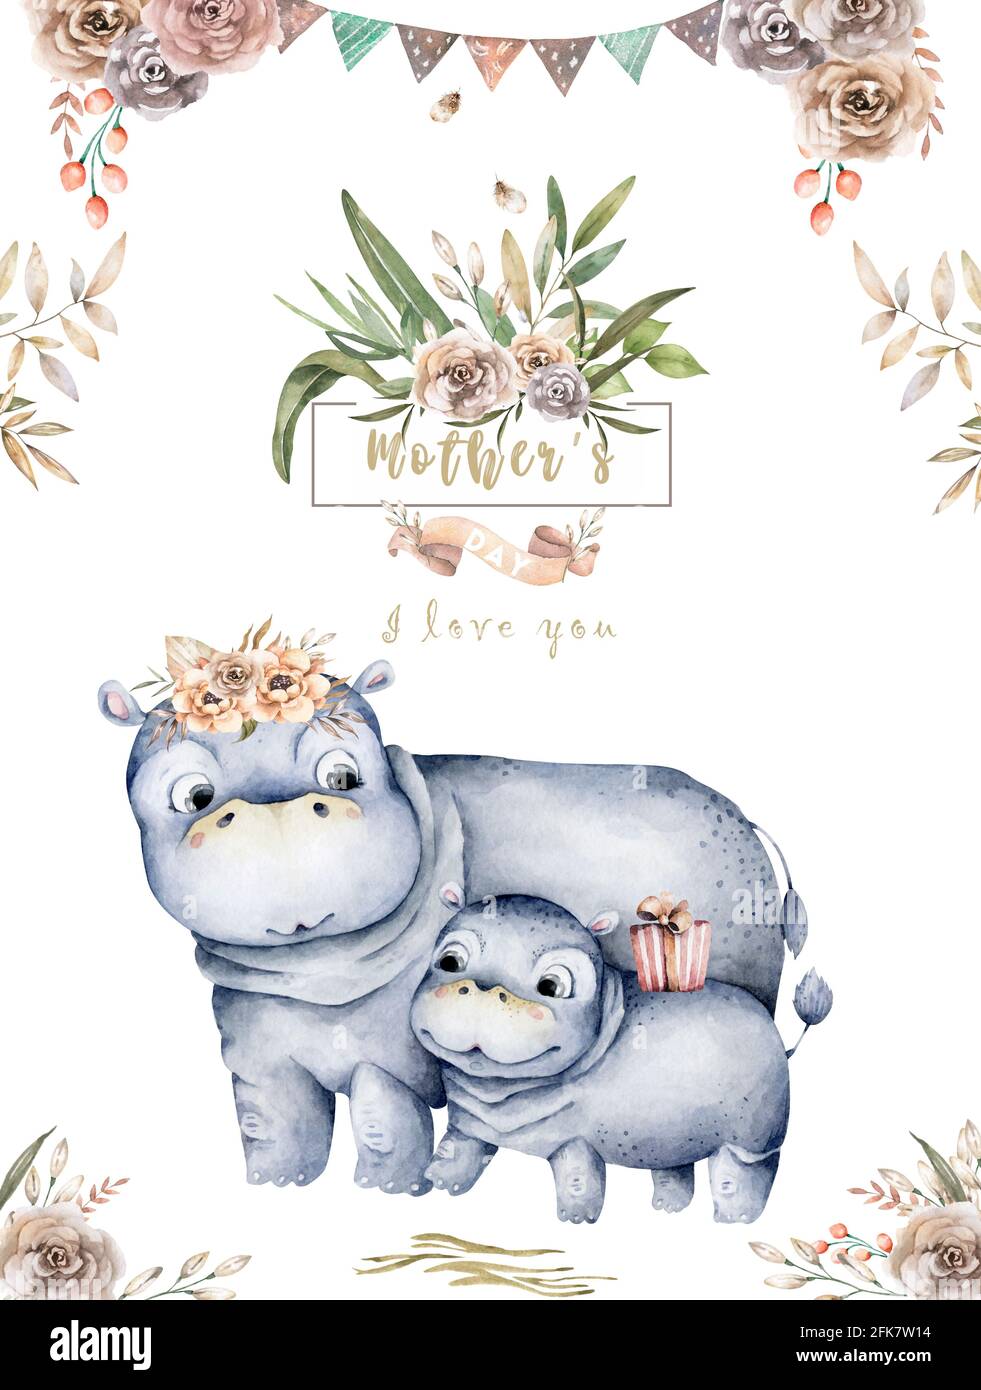 Acquerello simpatico cartoon illustrazione con cute hippo mummy e foglie di fiore del bambino. Disegno dell'illustrazione della madre e del bambino. Mamma tropicale Foto Stock